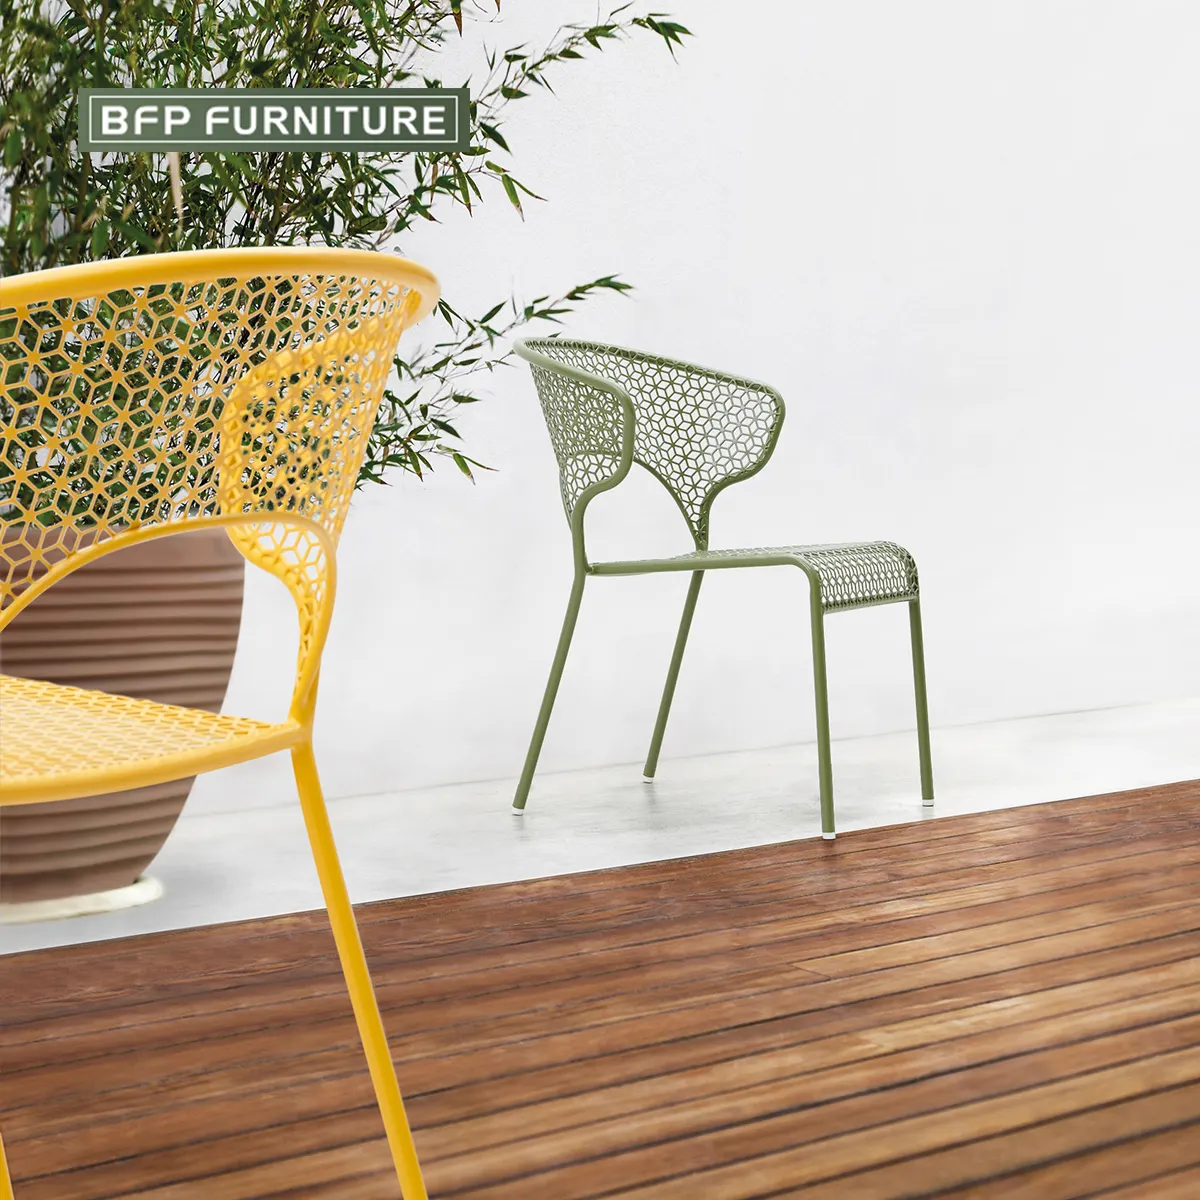 BFP hogar al por mayor personalizado al aire libre restaurante Mesa café muebles estilo nórdico restaurante mesa de comedor y sillas conjuntos